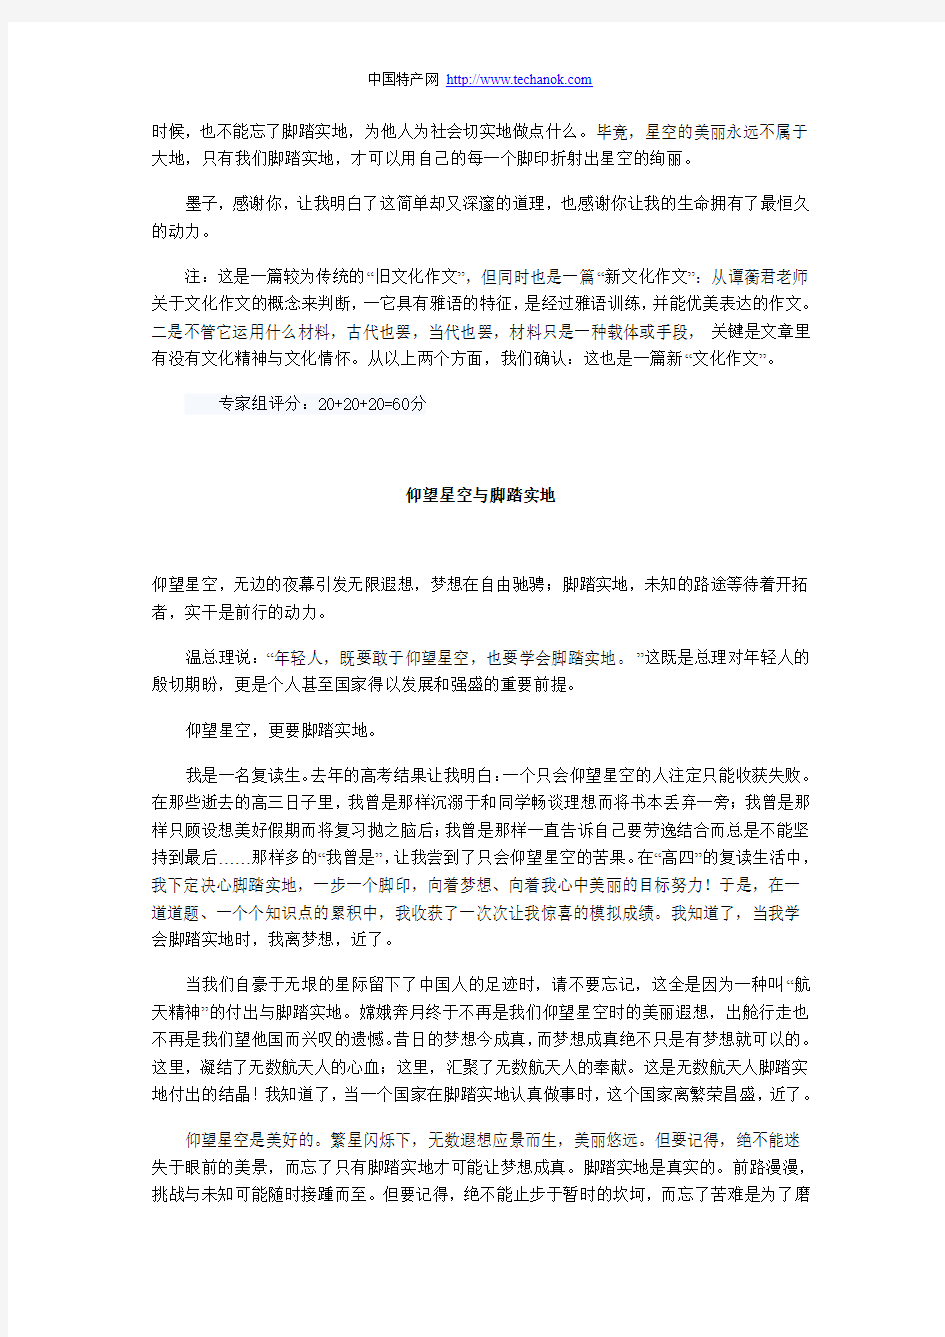 2010年高考满分作文及点评(北京卷)